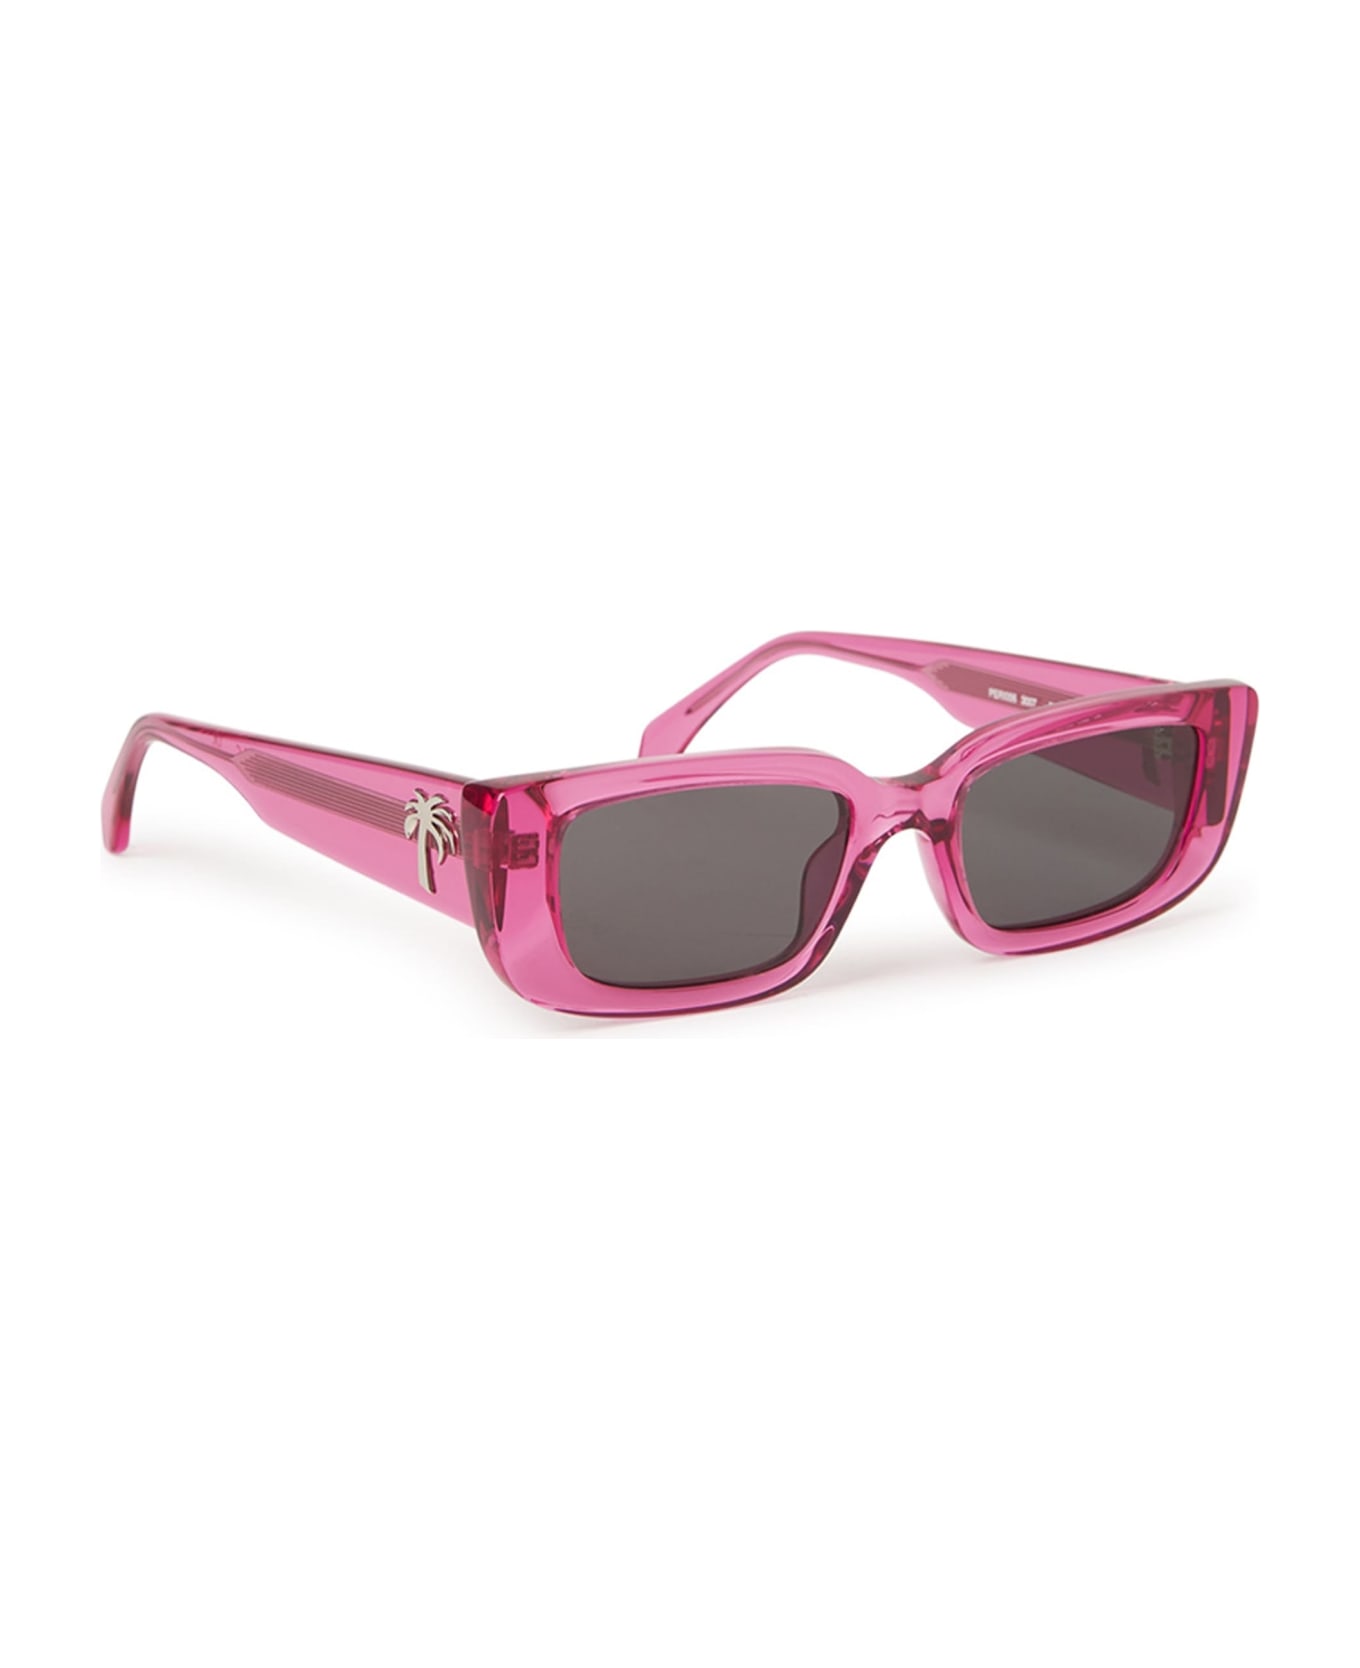 Palm Angels Yosemite - Pink Sunglasses - pink